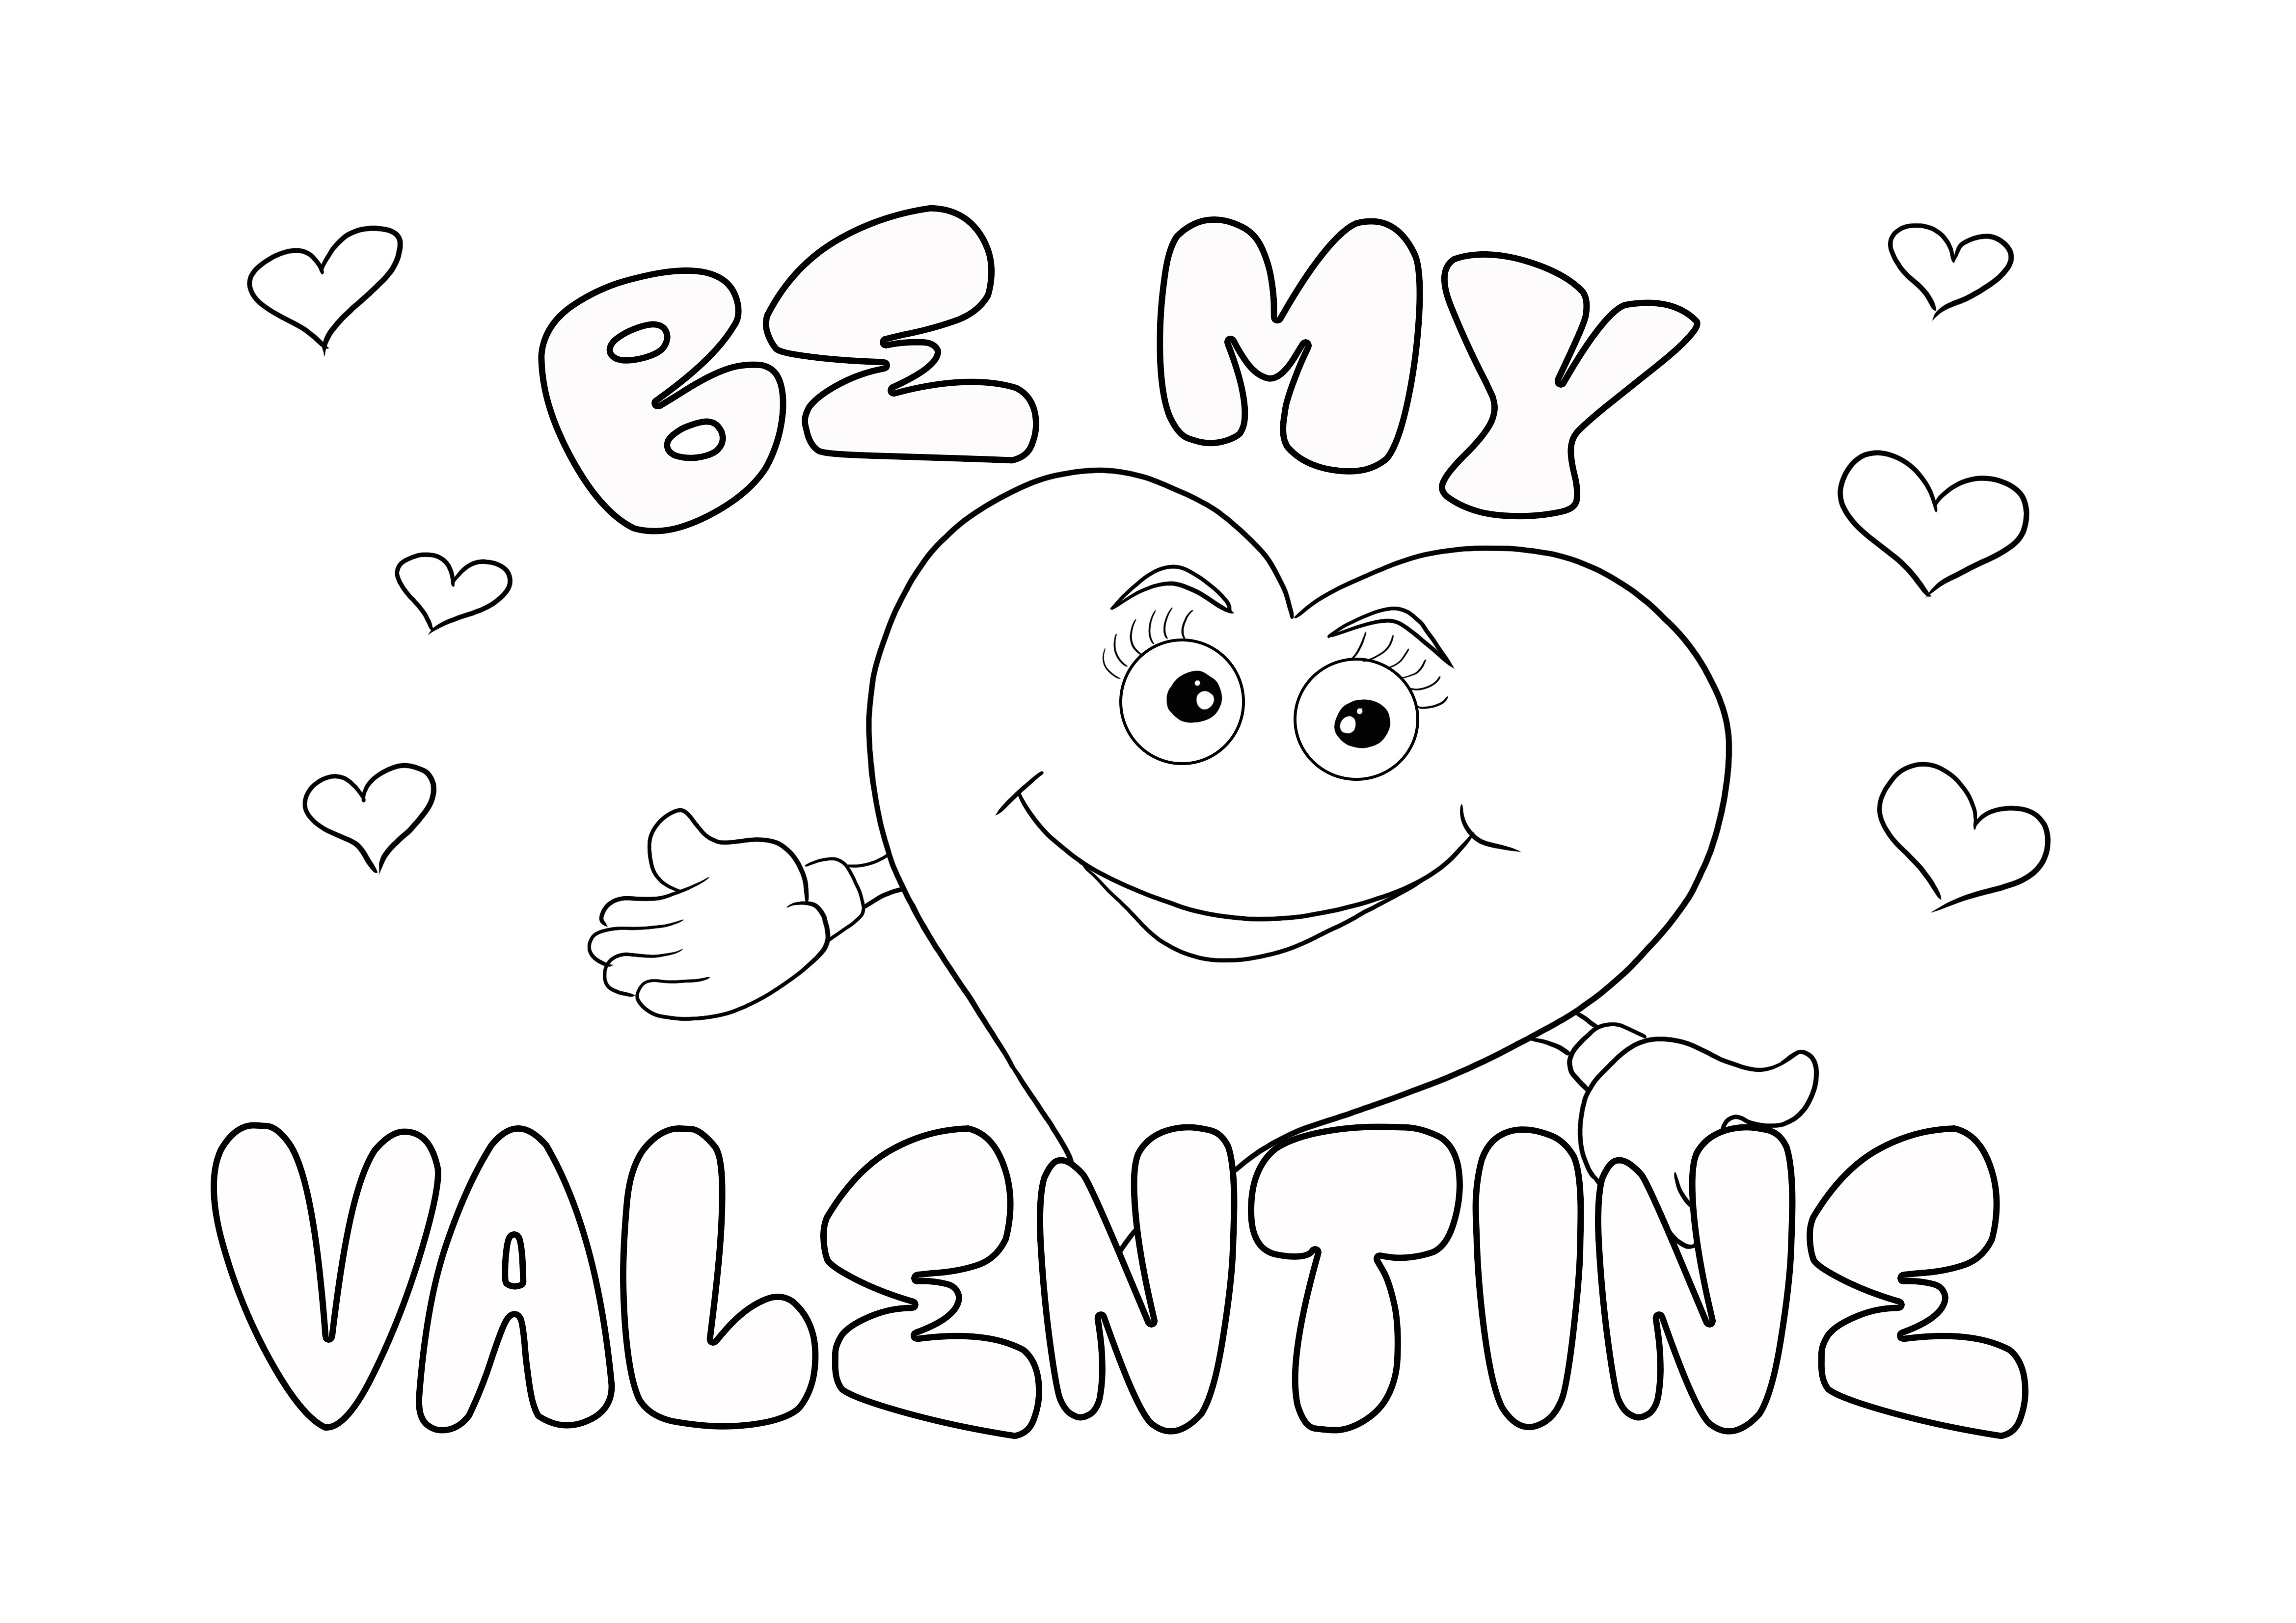 Mosolygó szív a Be My Valentine kártyán, ingyenesen nyomtatható színre